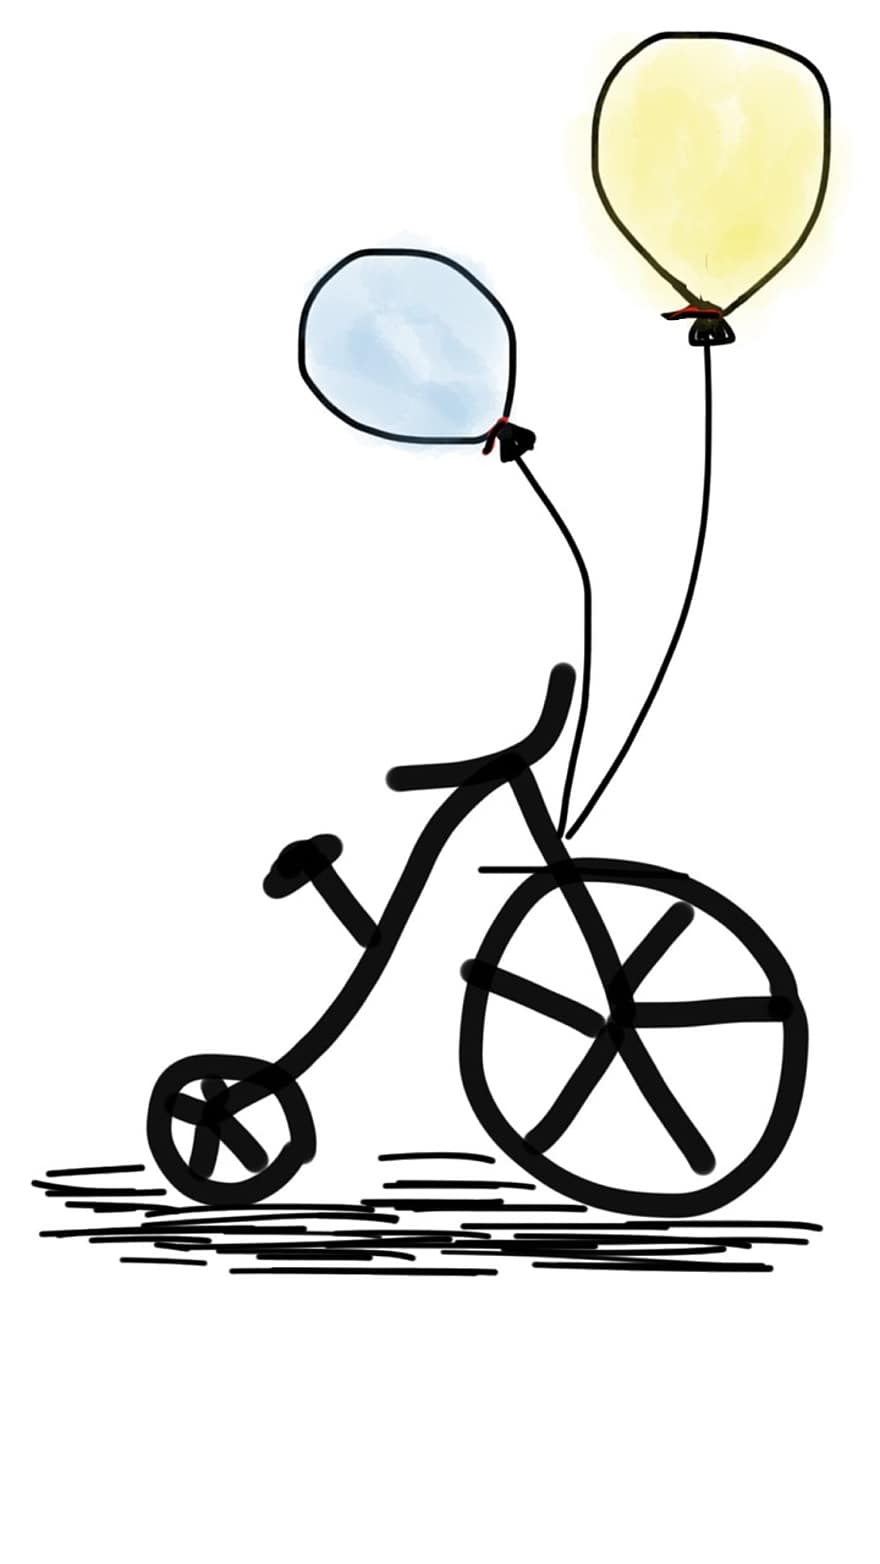 велосипед, повітряна куля, Жовта куля, синя куля, спосіб життя, катання на велосипеді, їзда на велосипеді, спорт, їздити, весело, на відкритому повітрі